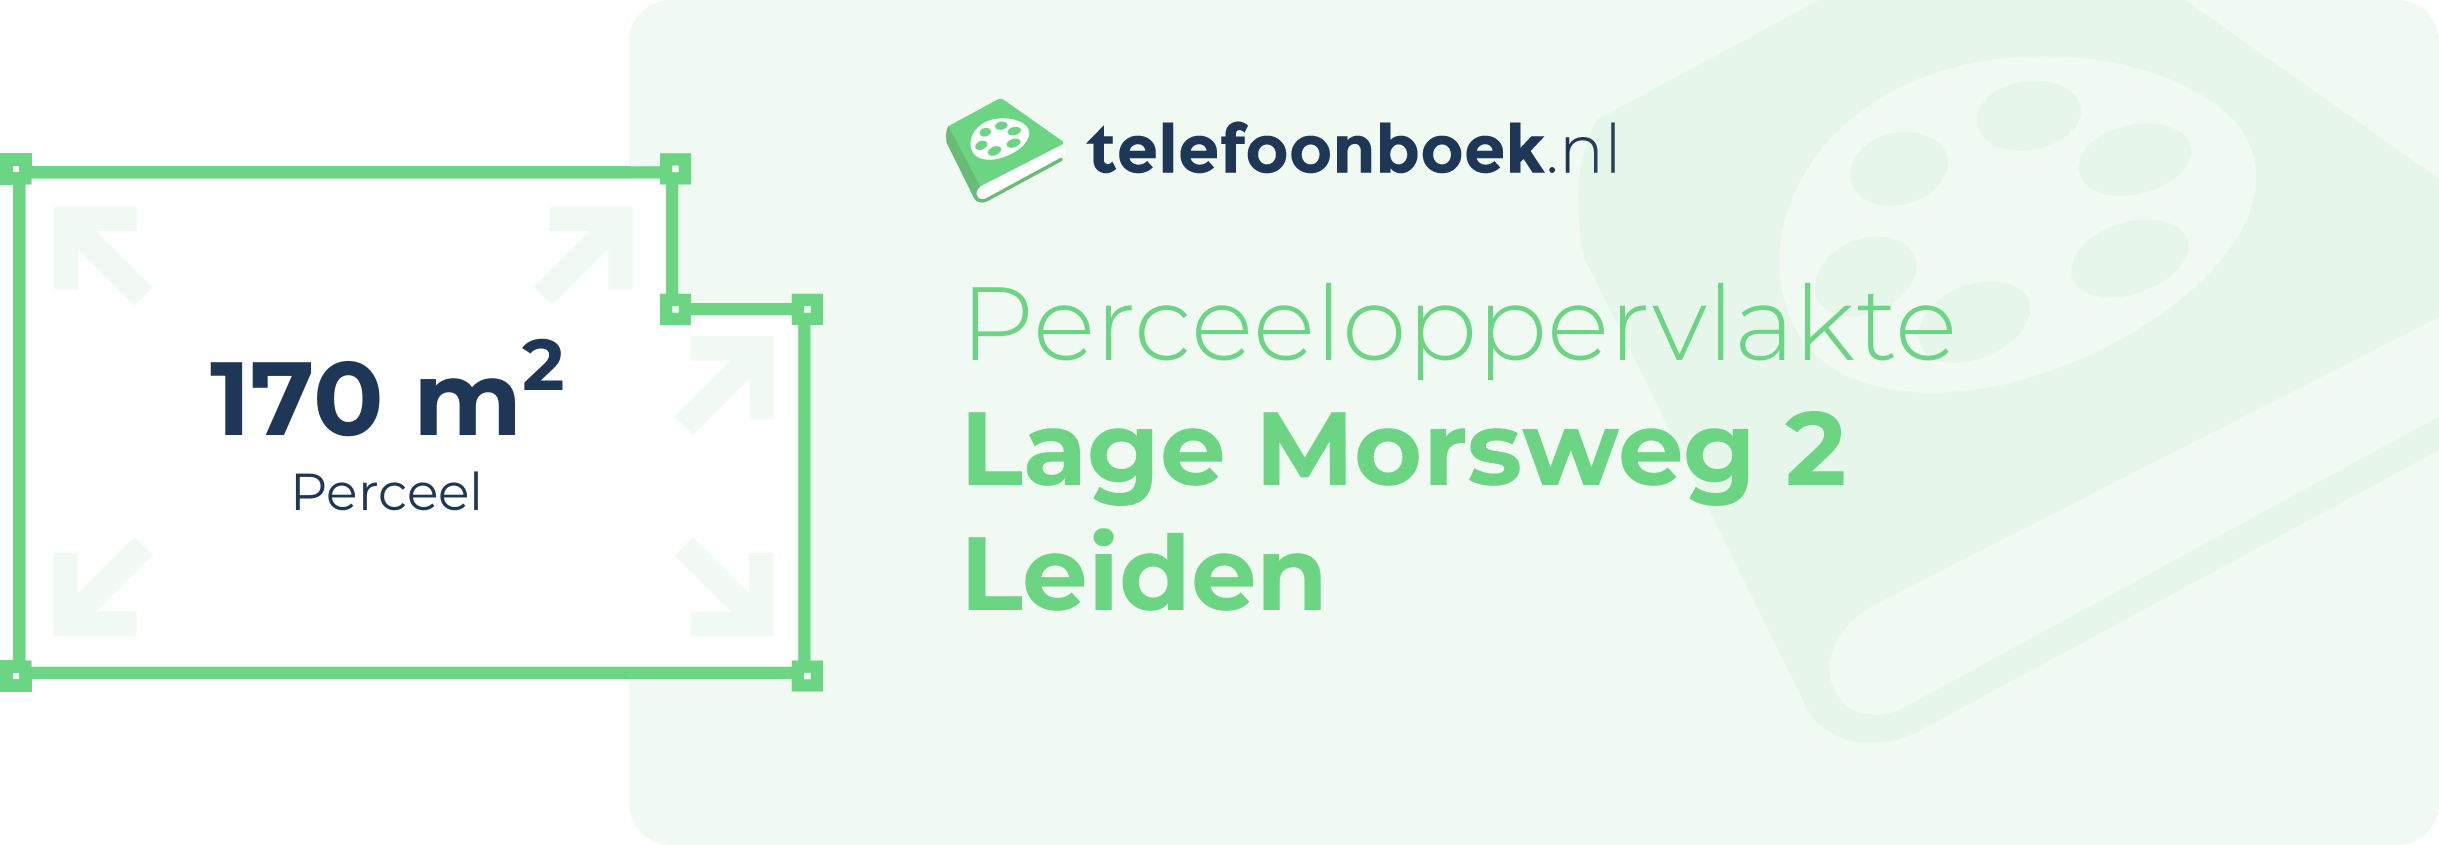 Perceeloppervlakte Lage Morsweg 2 Leiden